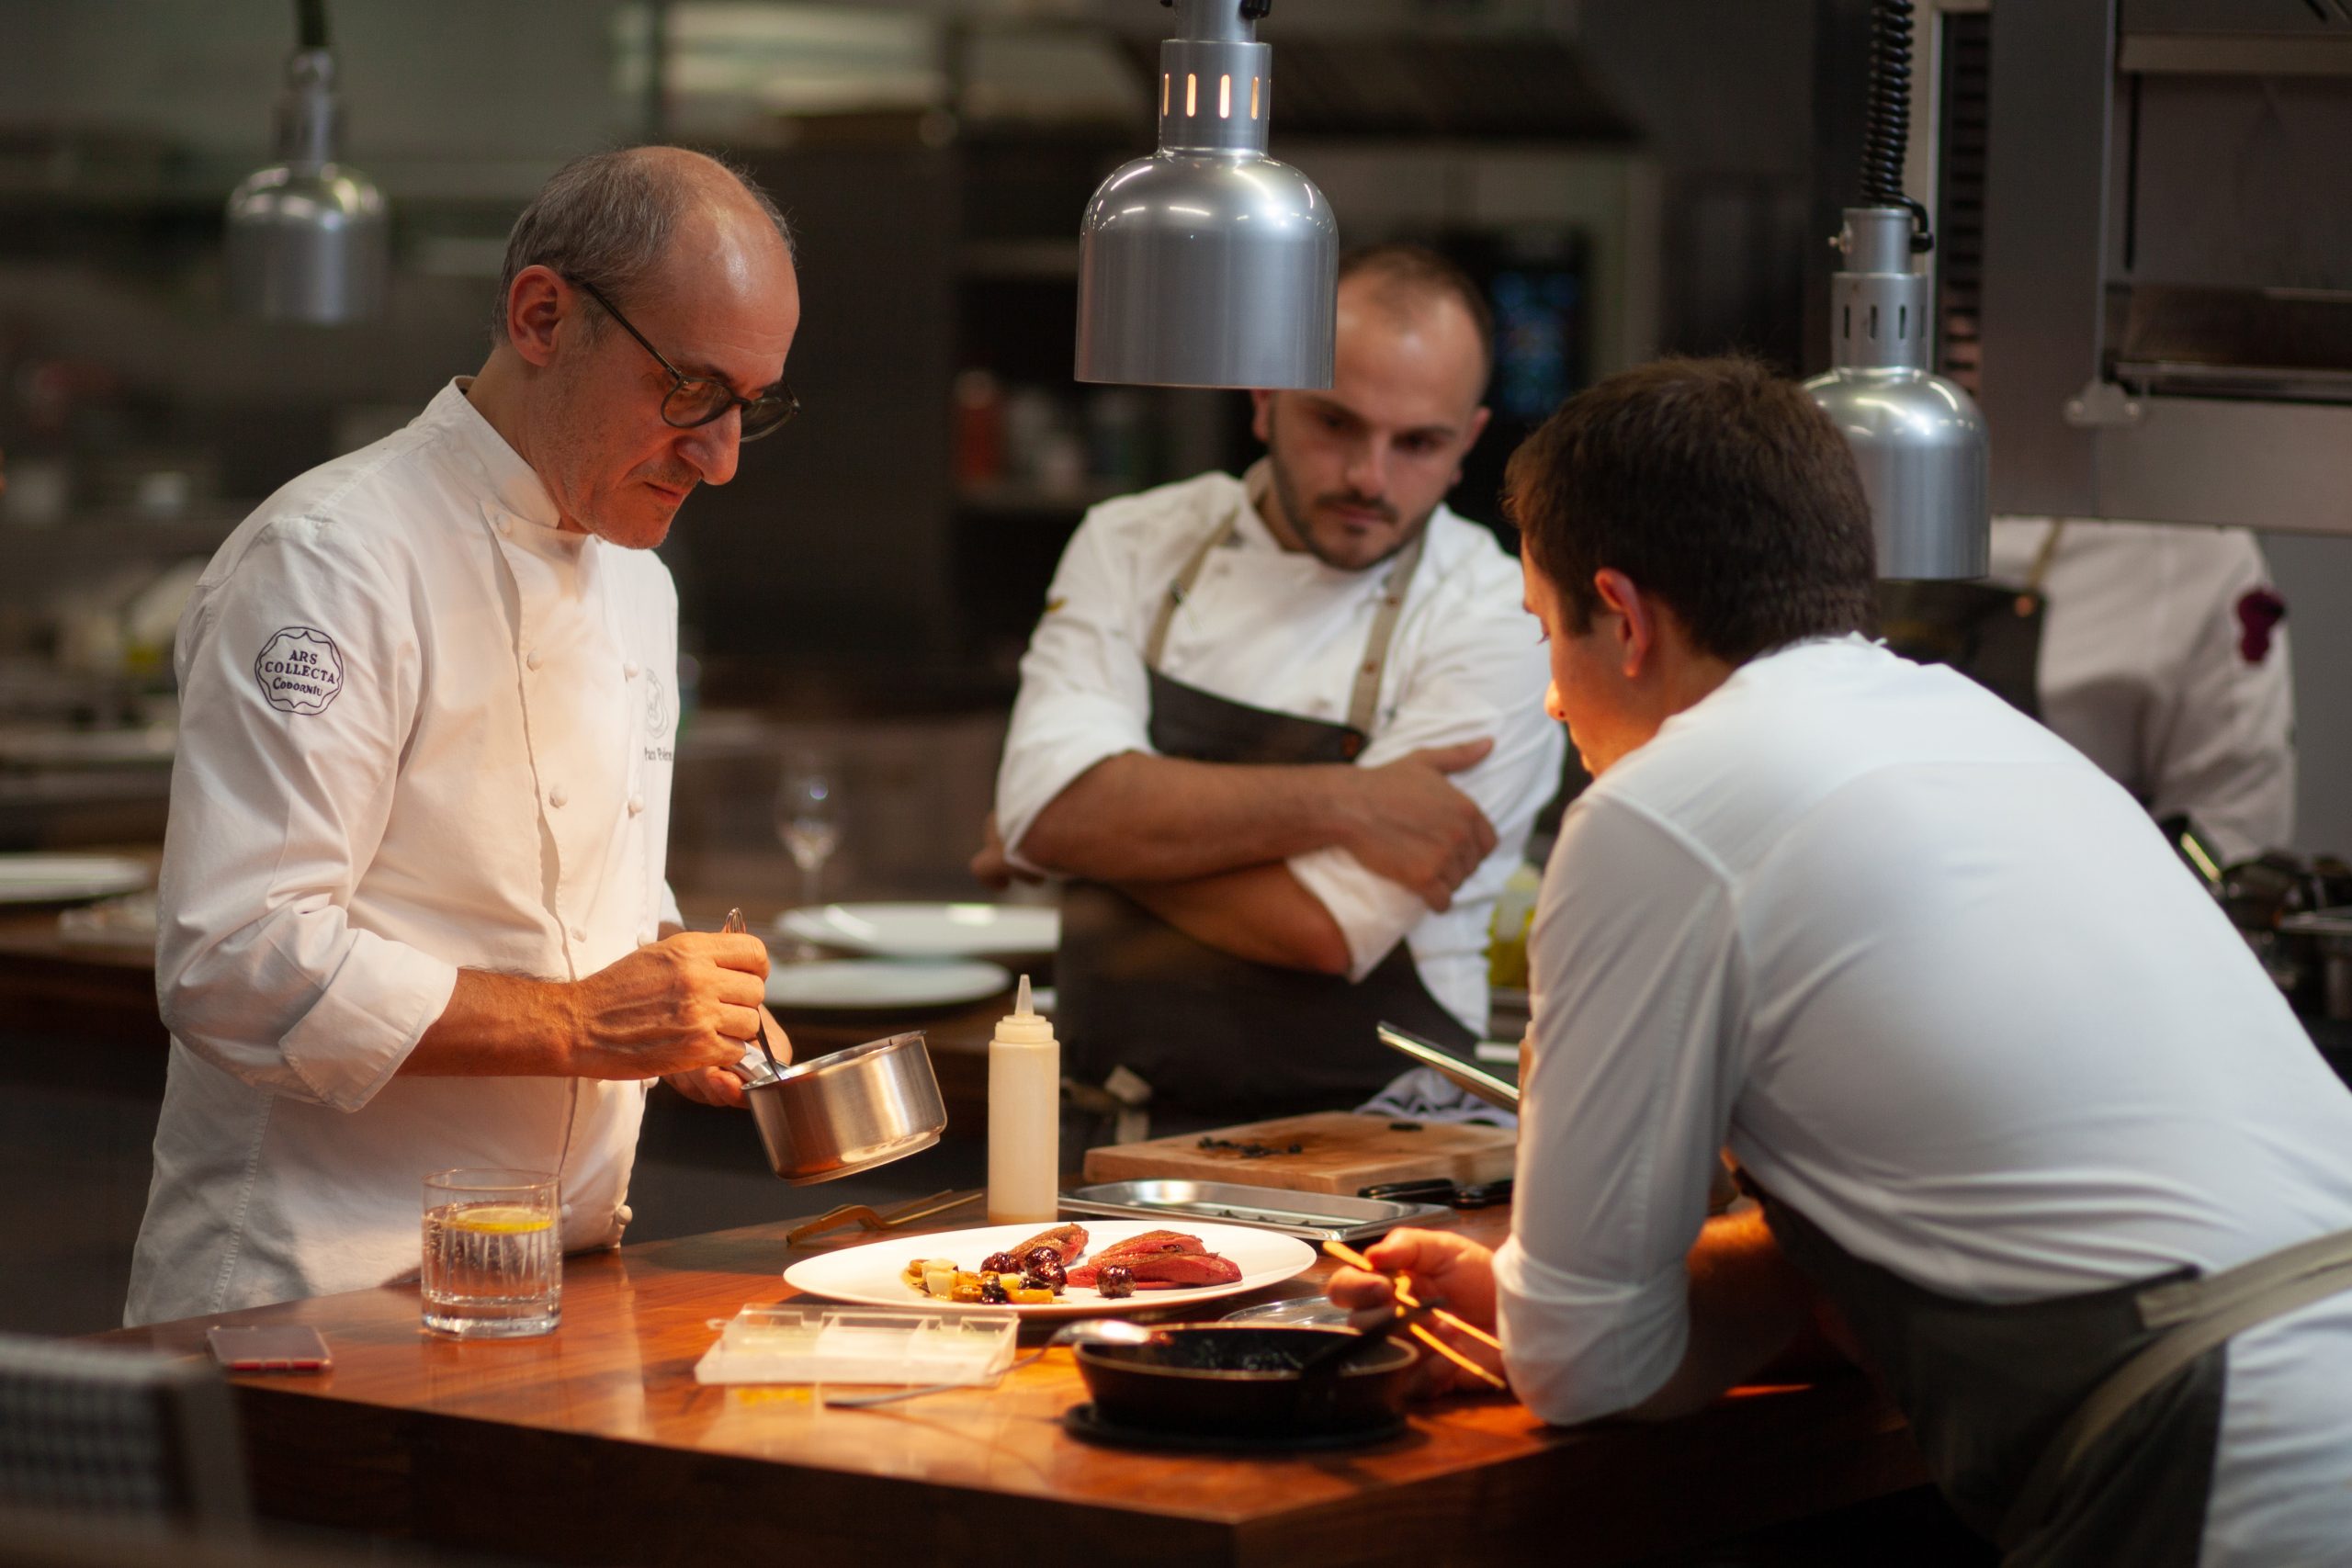 Paco Pérez se convierte en el chef con más estrellas Michelin de Catalunya, gracias a la nueva estrella conseguida  en El restaurante «Terra» del Hotel Alàbriga 5*GL